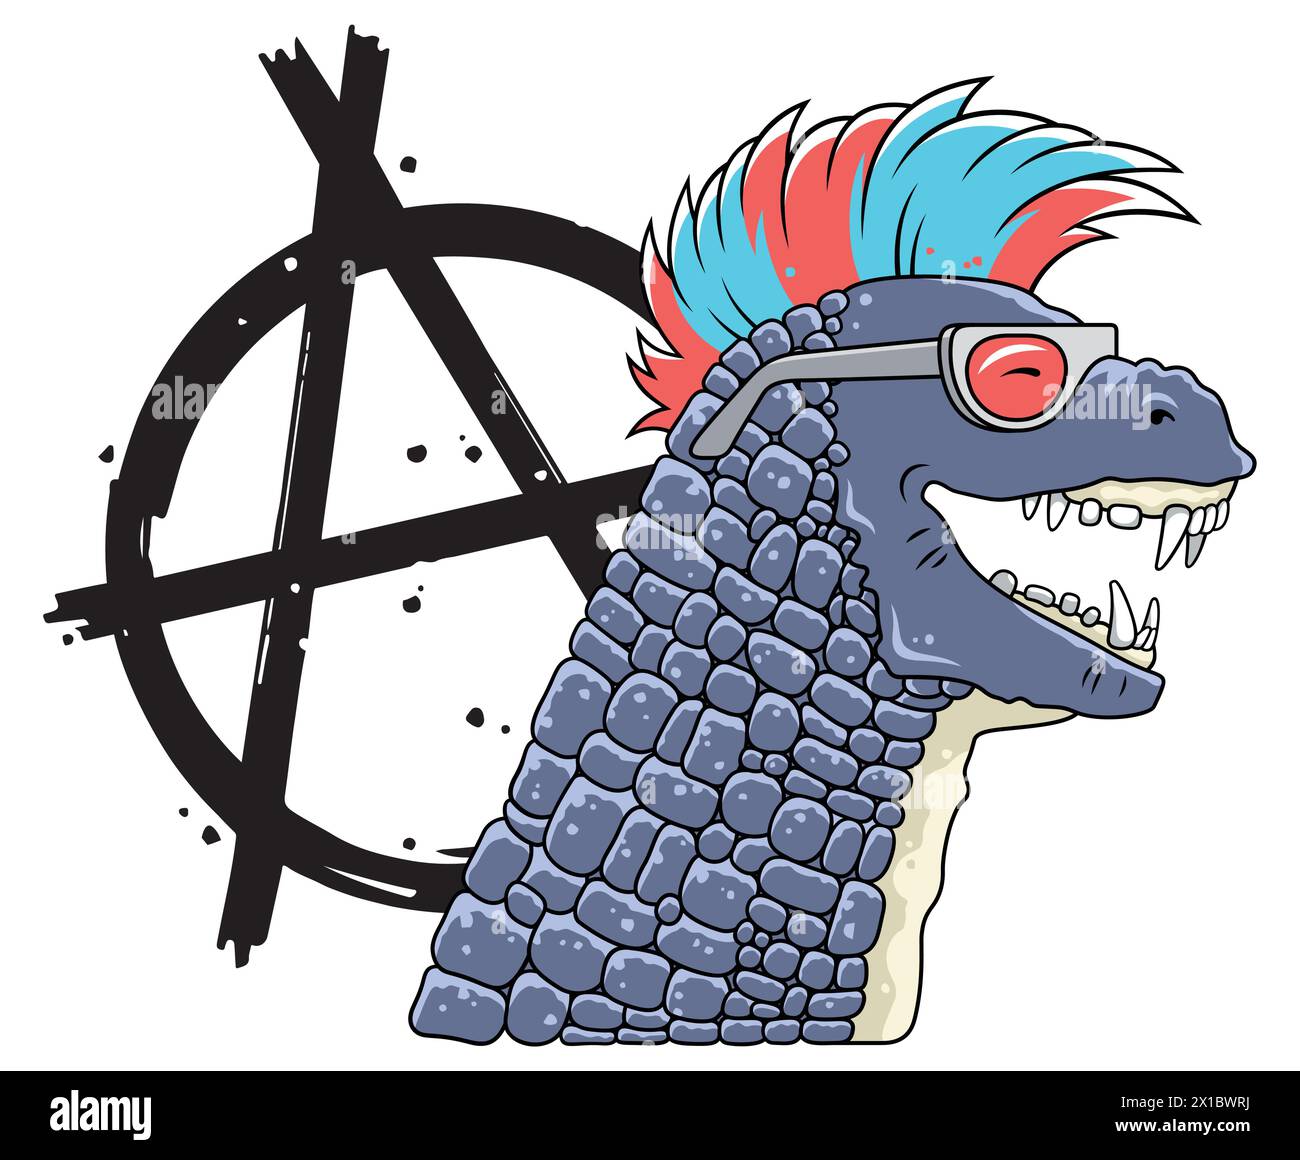 Dinosauro cartoni animati in stile punk rock per il design di abbigliamento per bambini. Illustrazione vettoriale del simbolo Dino e dell'anarchia punk Illustrazione Vettoriale